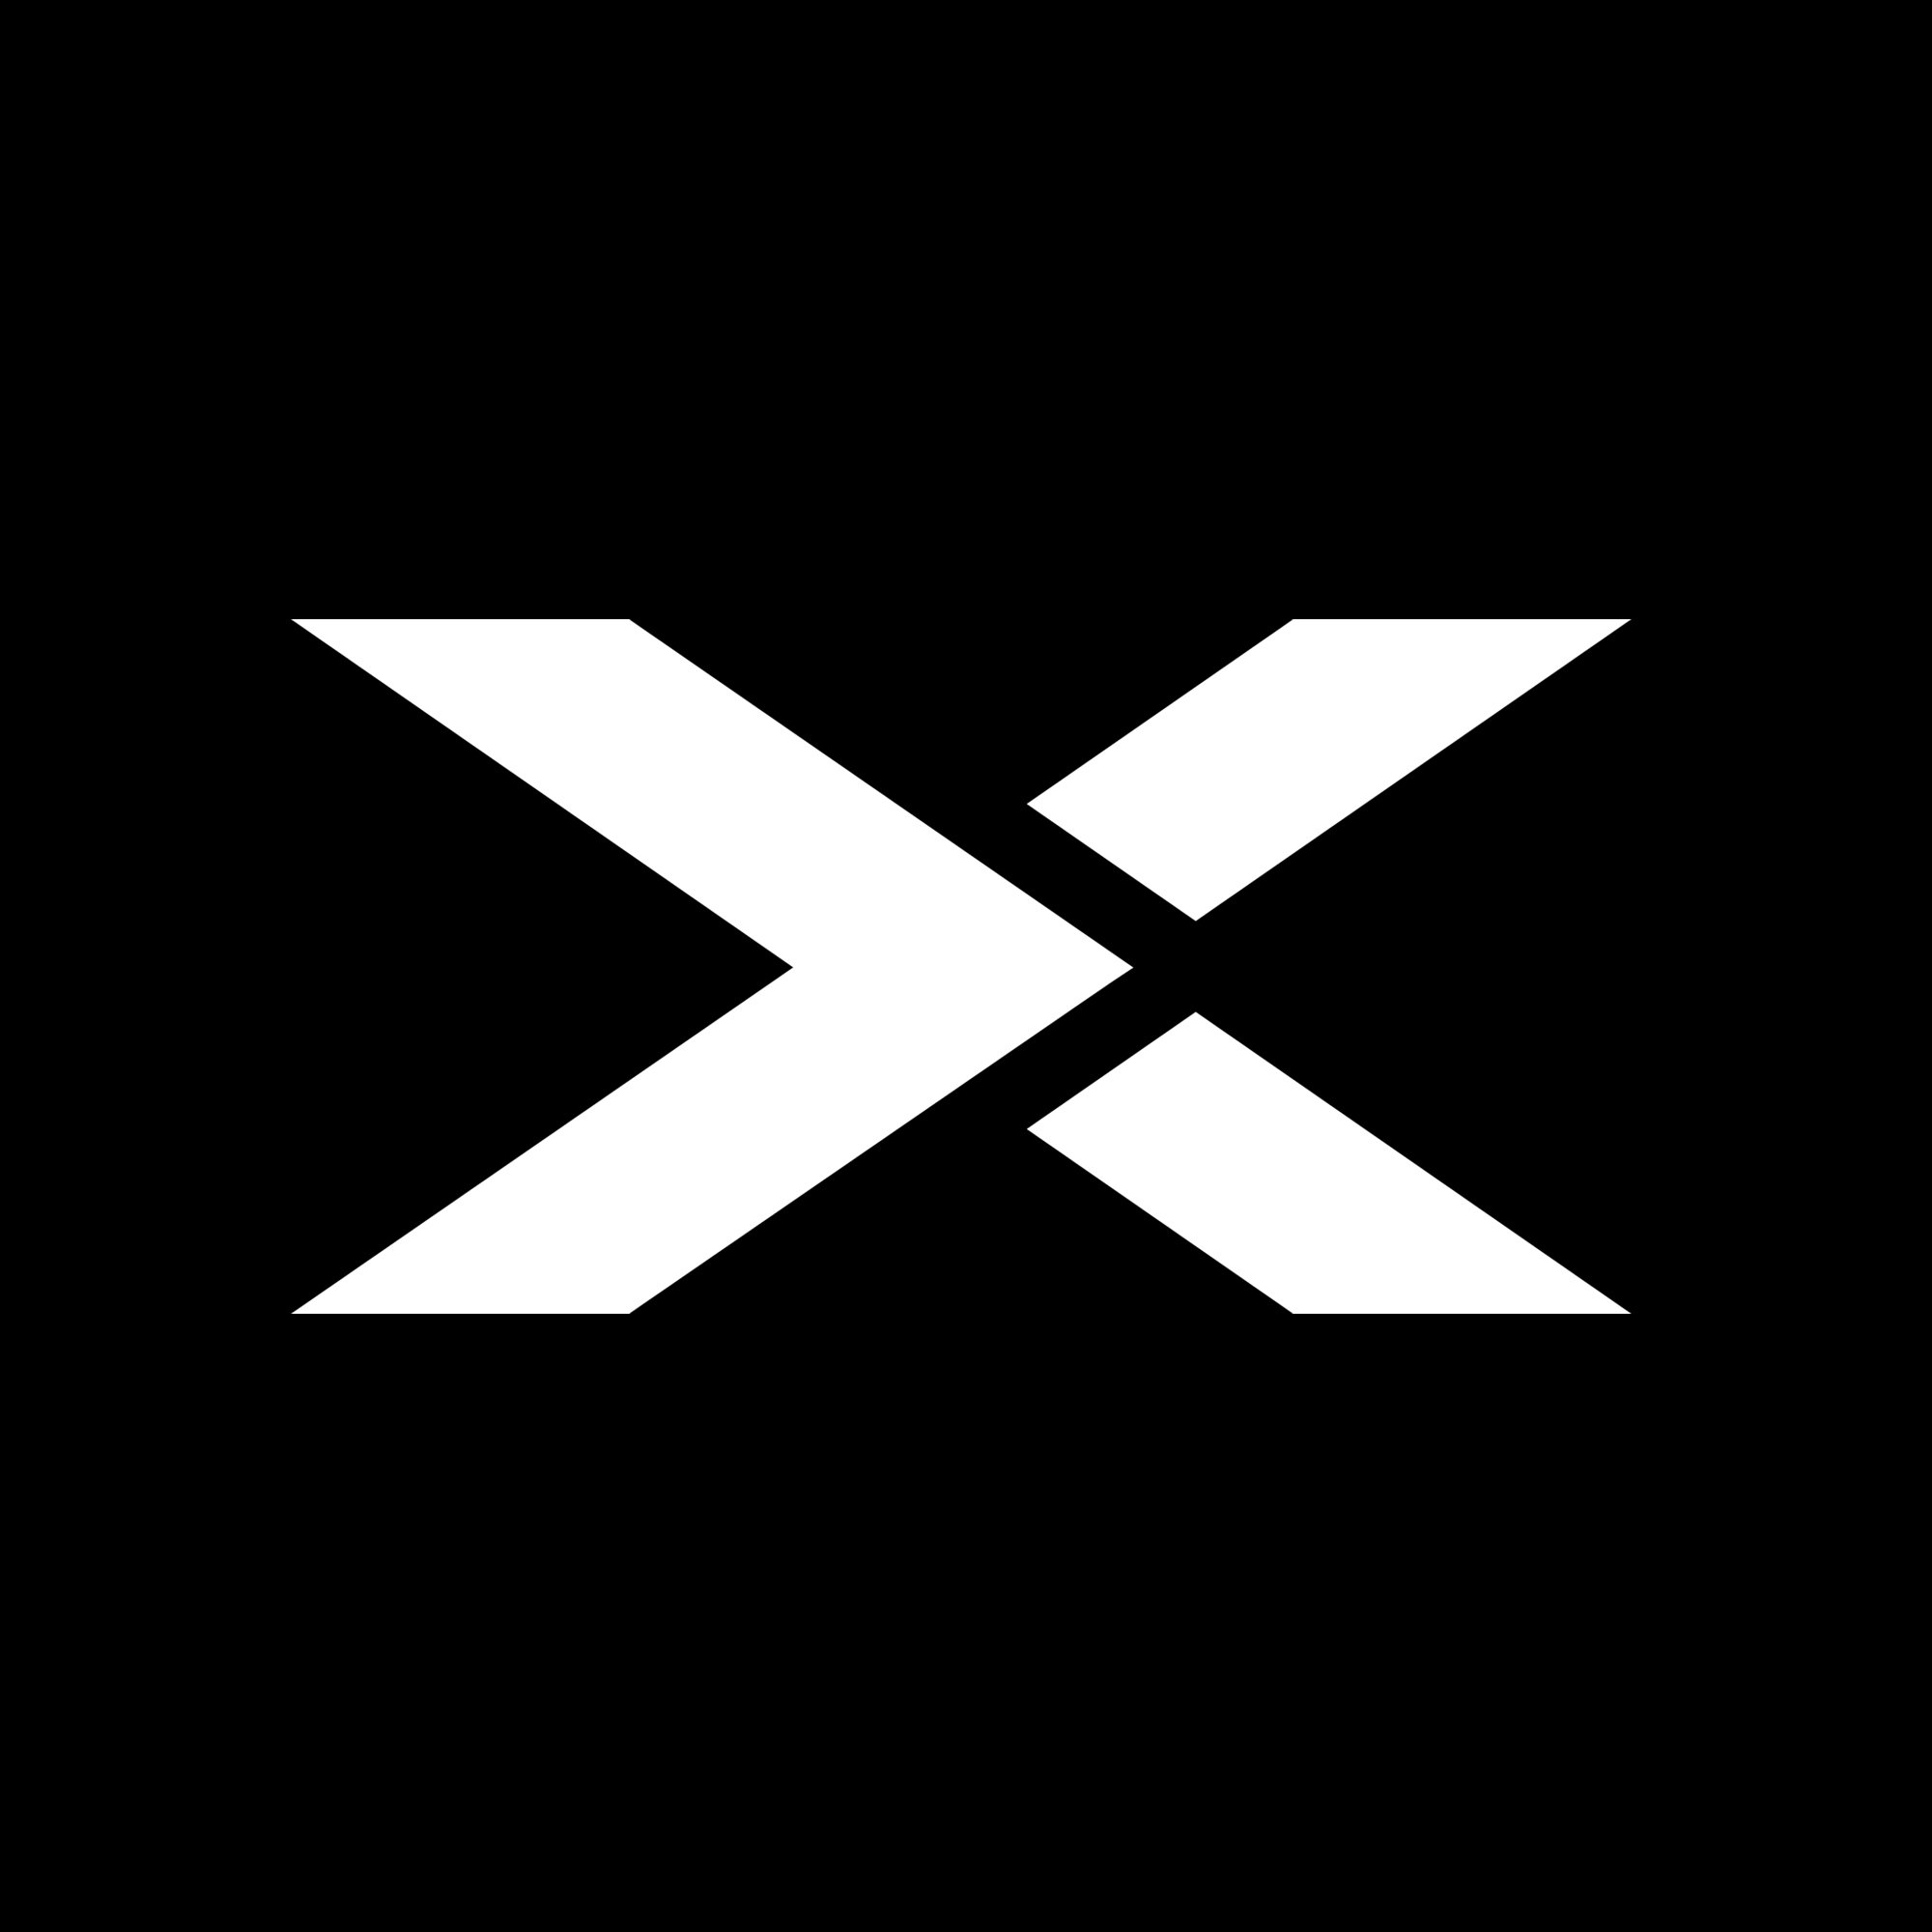 XFX Global